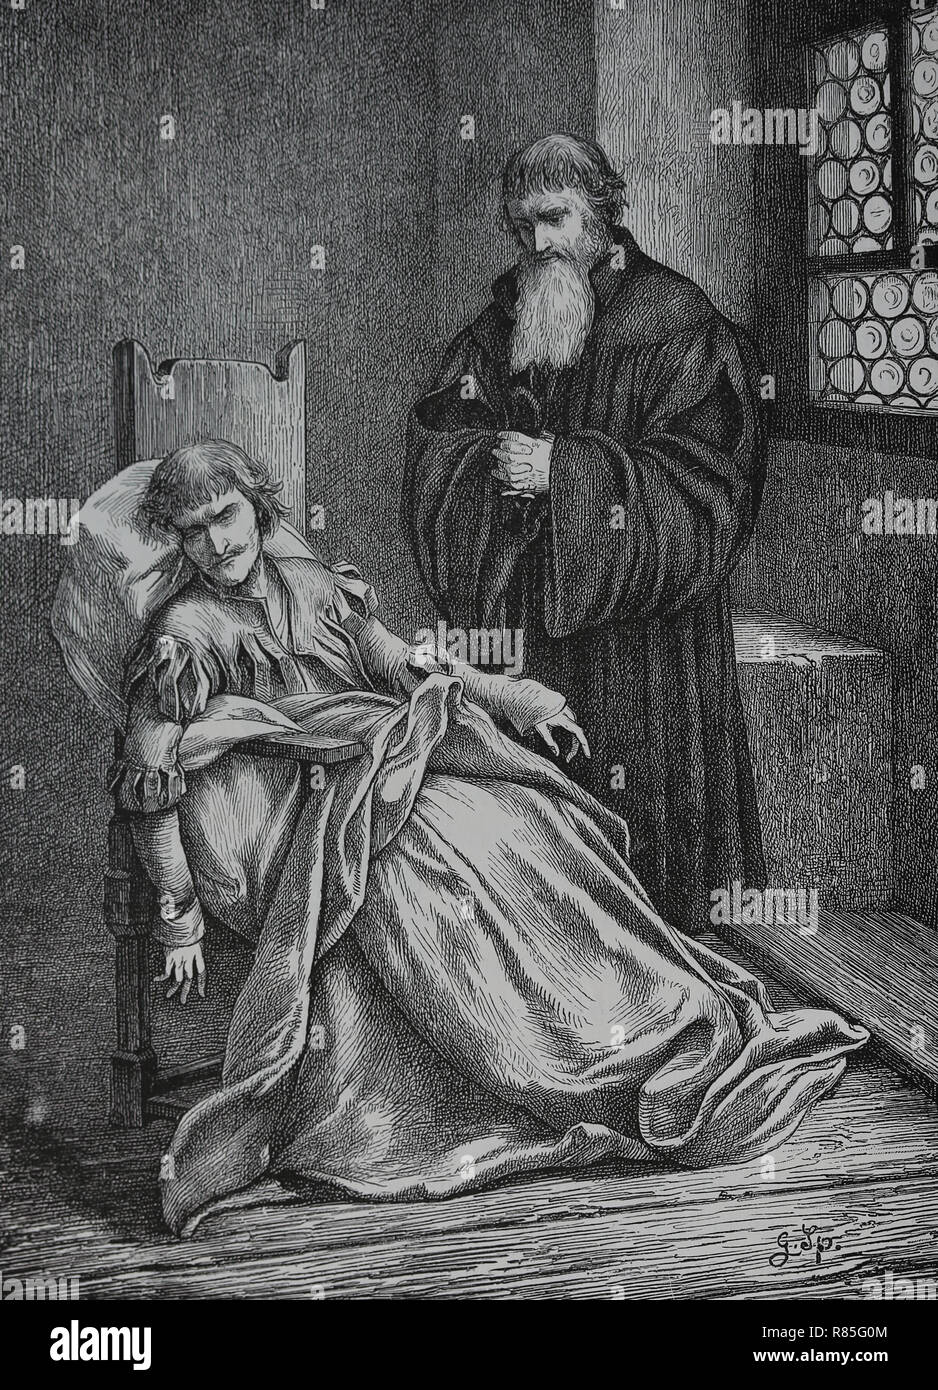 Ulrich von Hutten (1488-1523). Chercheur allemand, poète et critique du catholicisme. Derniers moments. Gravure de Germania, 1882. Banque D'Images